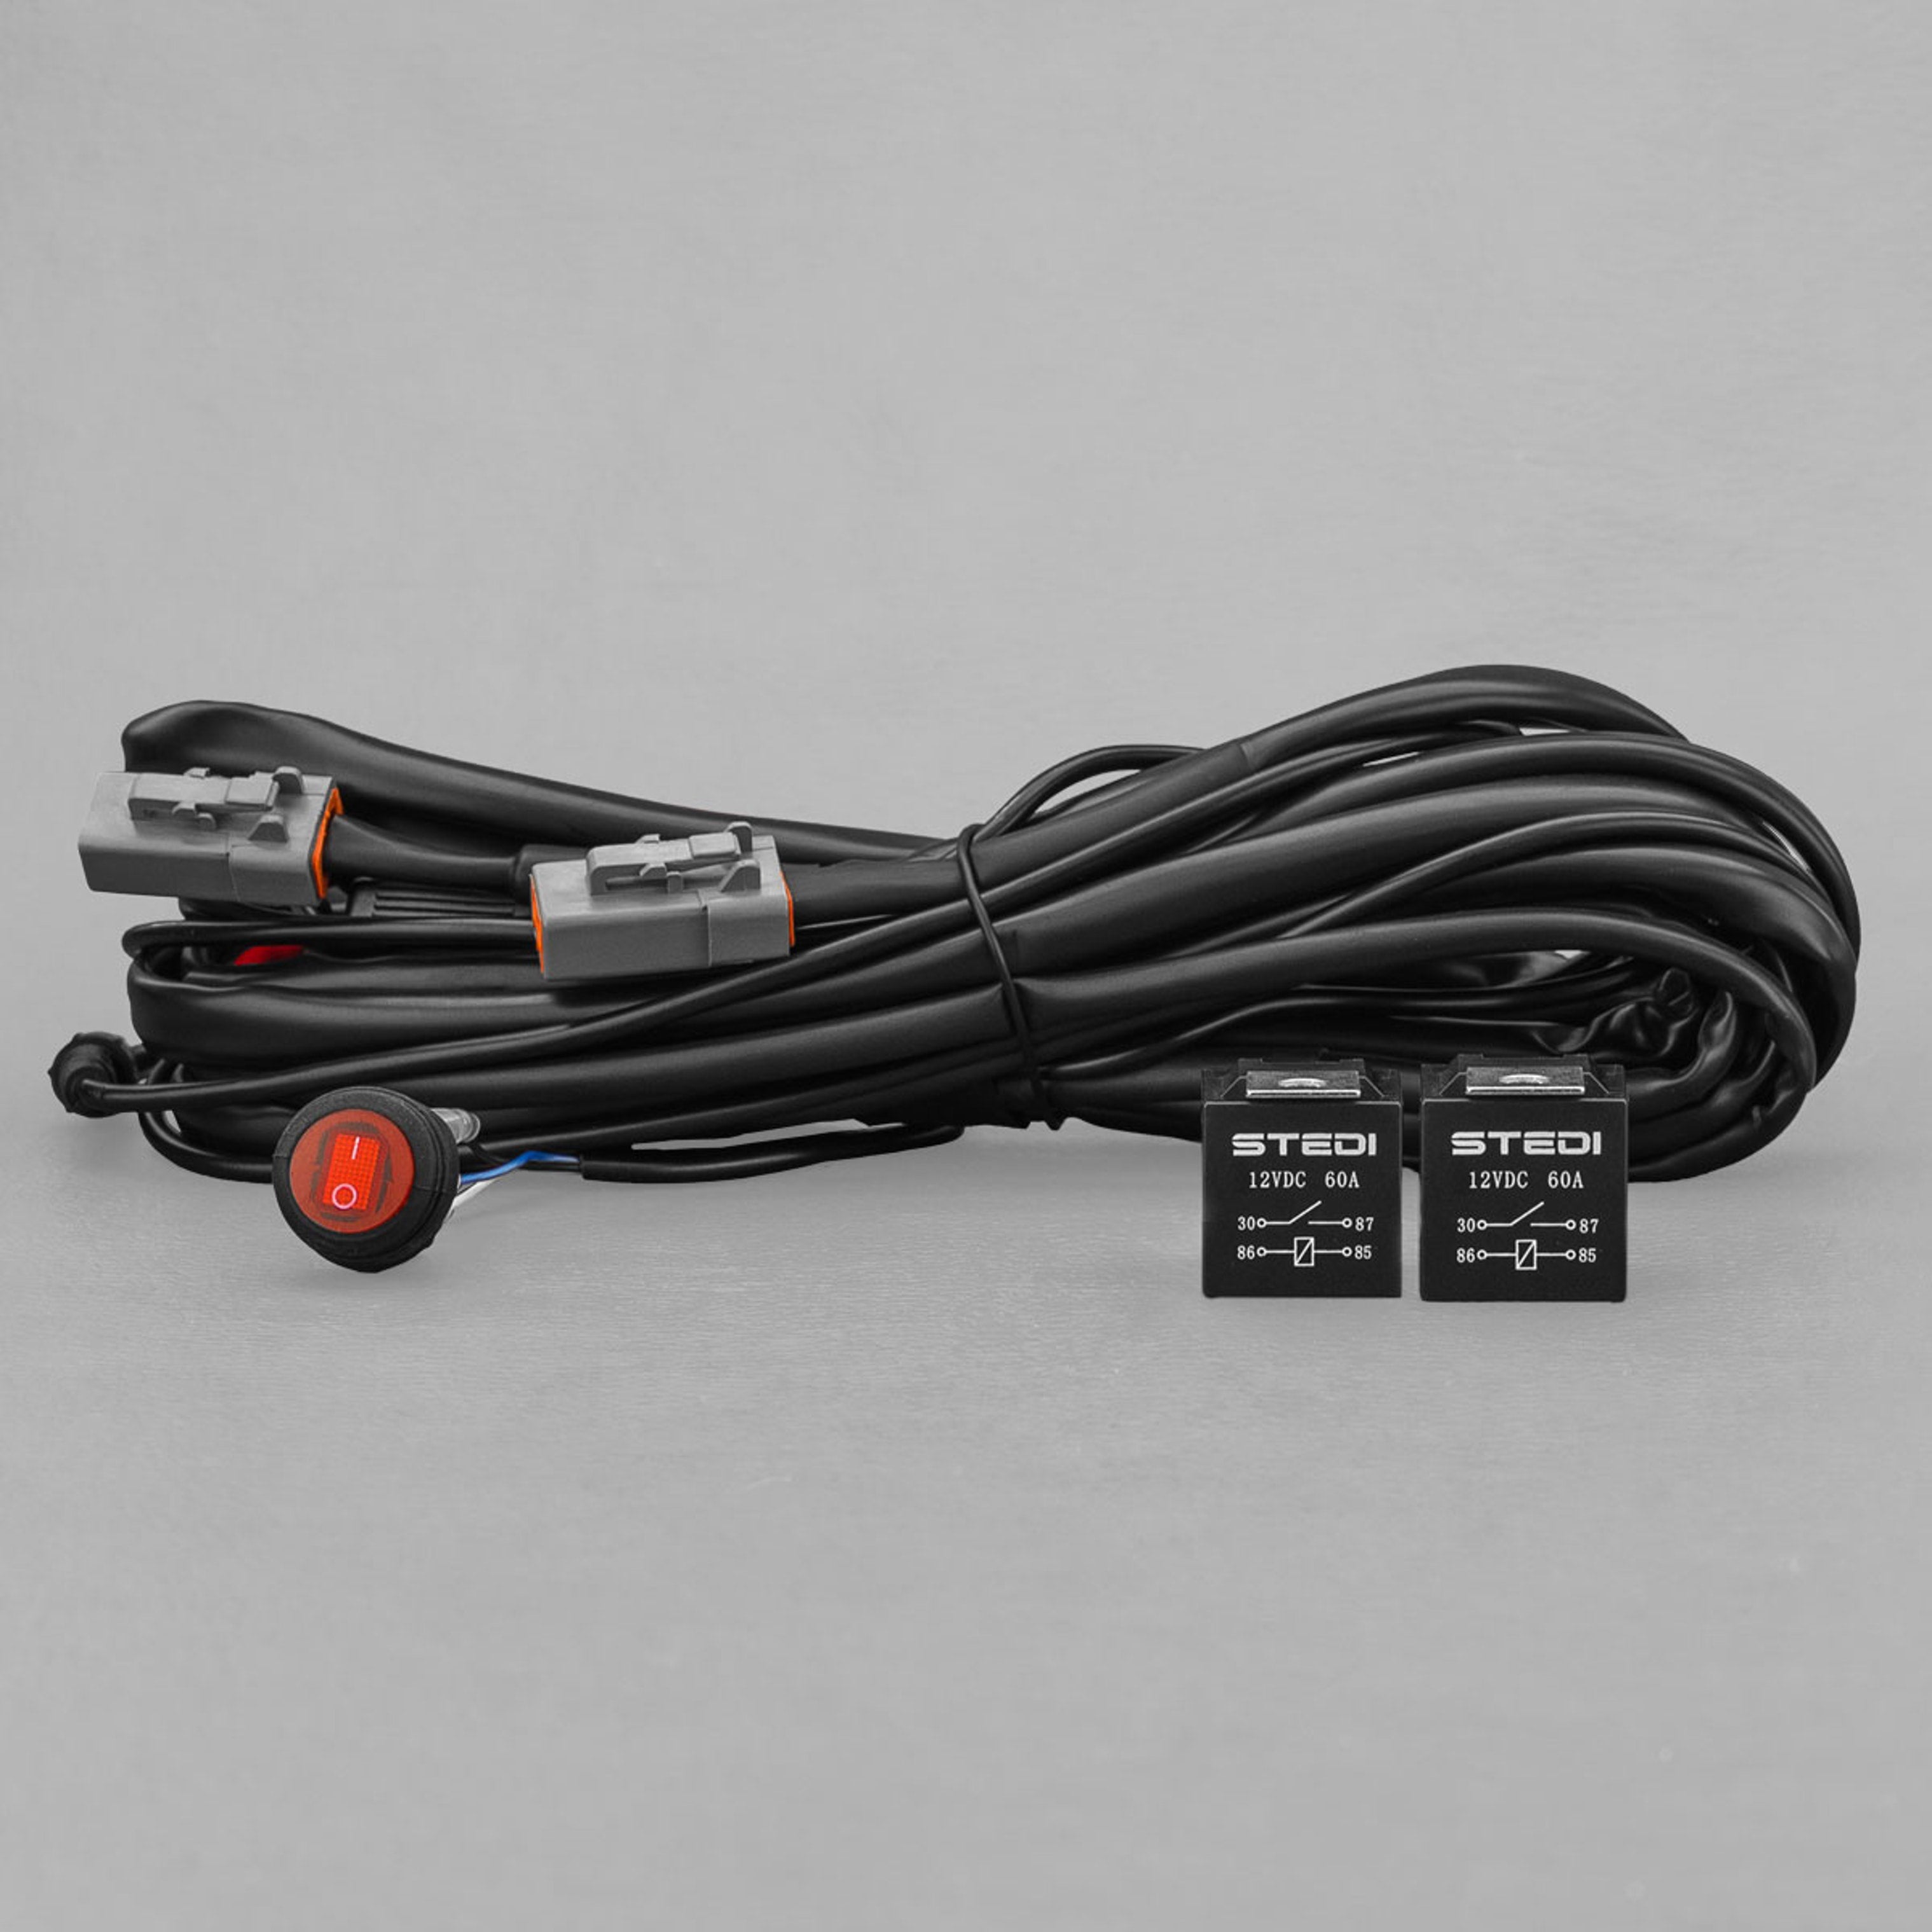 Zusatzscheinwerfer Kabelsatz für 1 Schaltkreis inkl. Relais